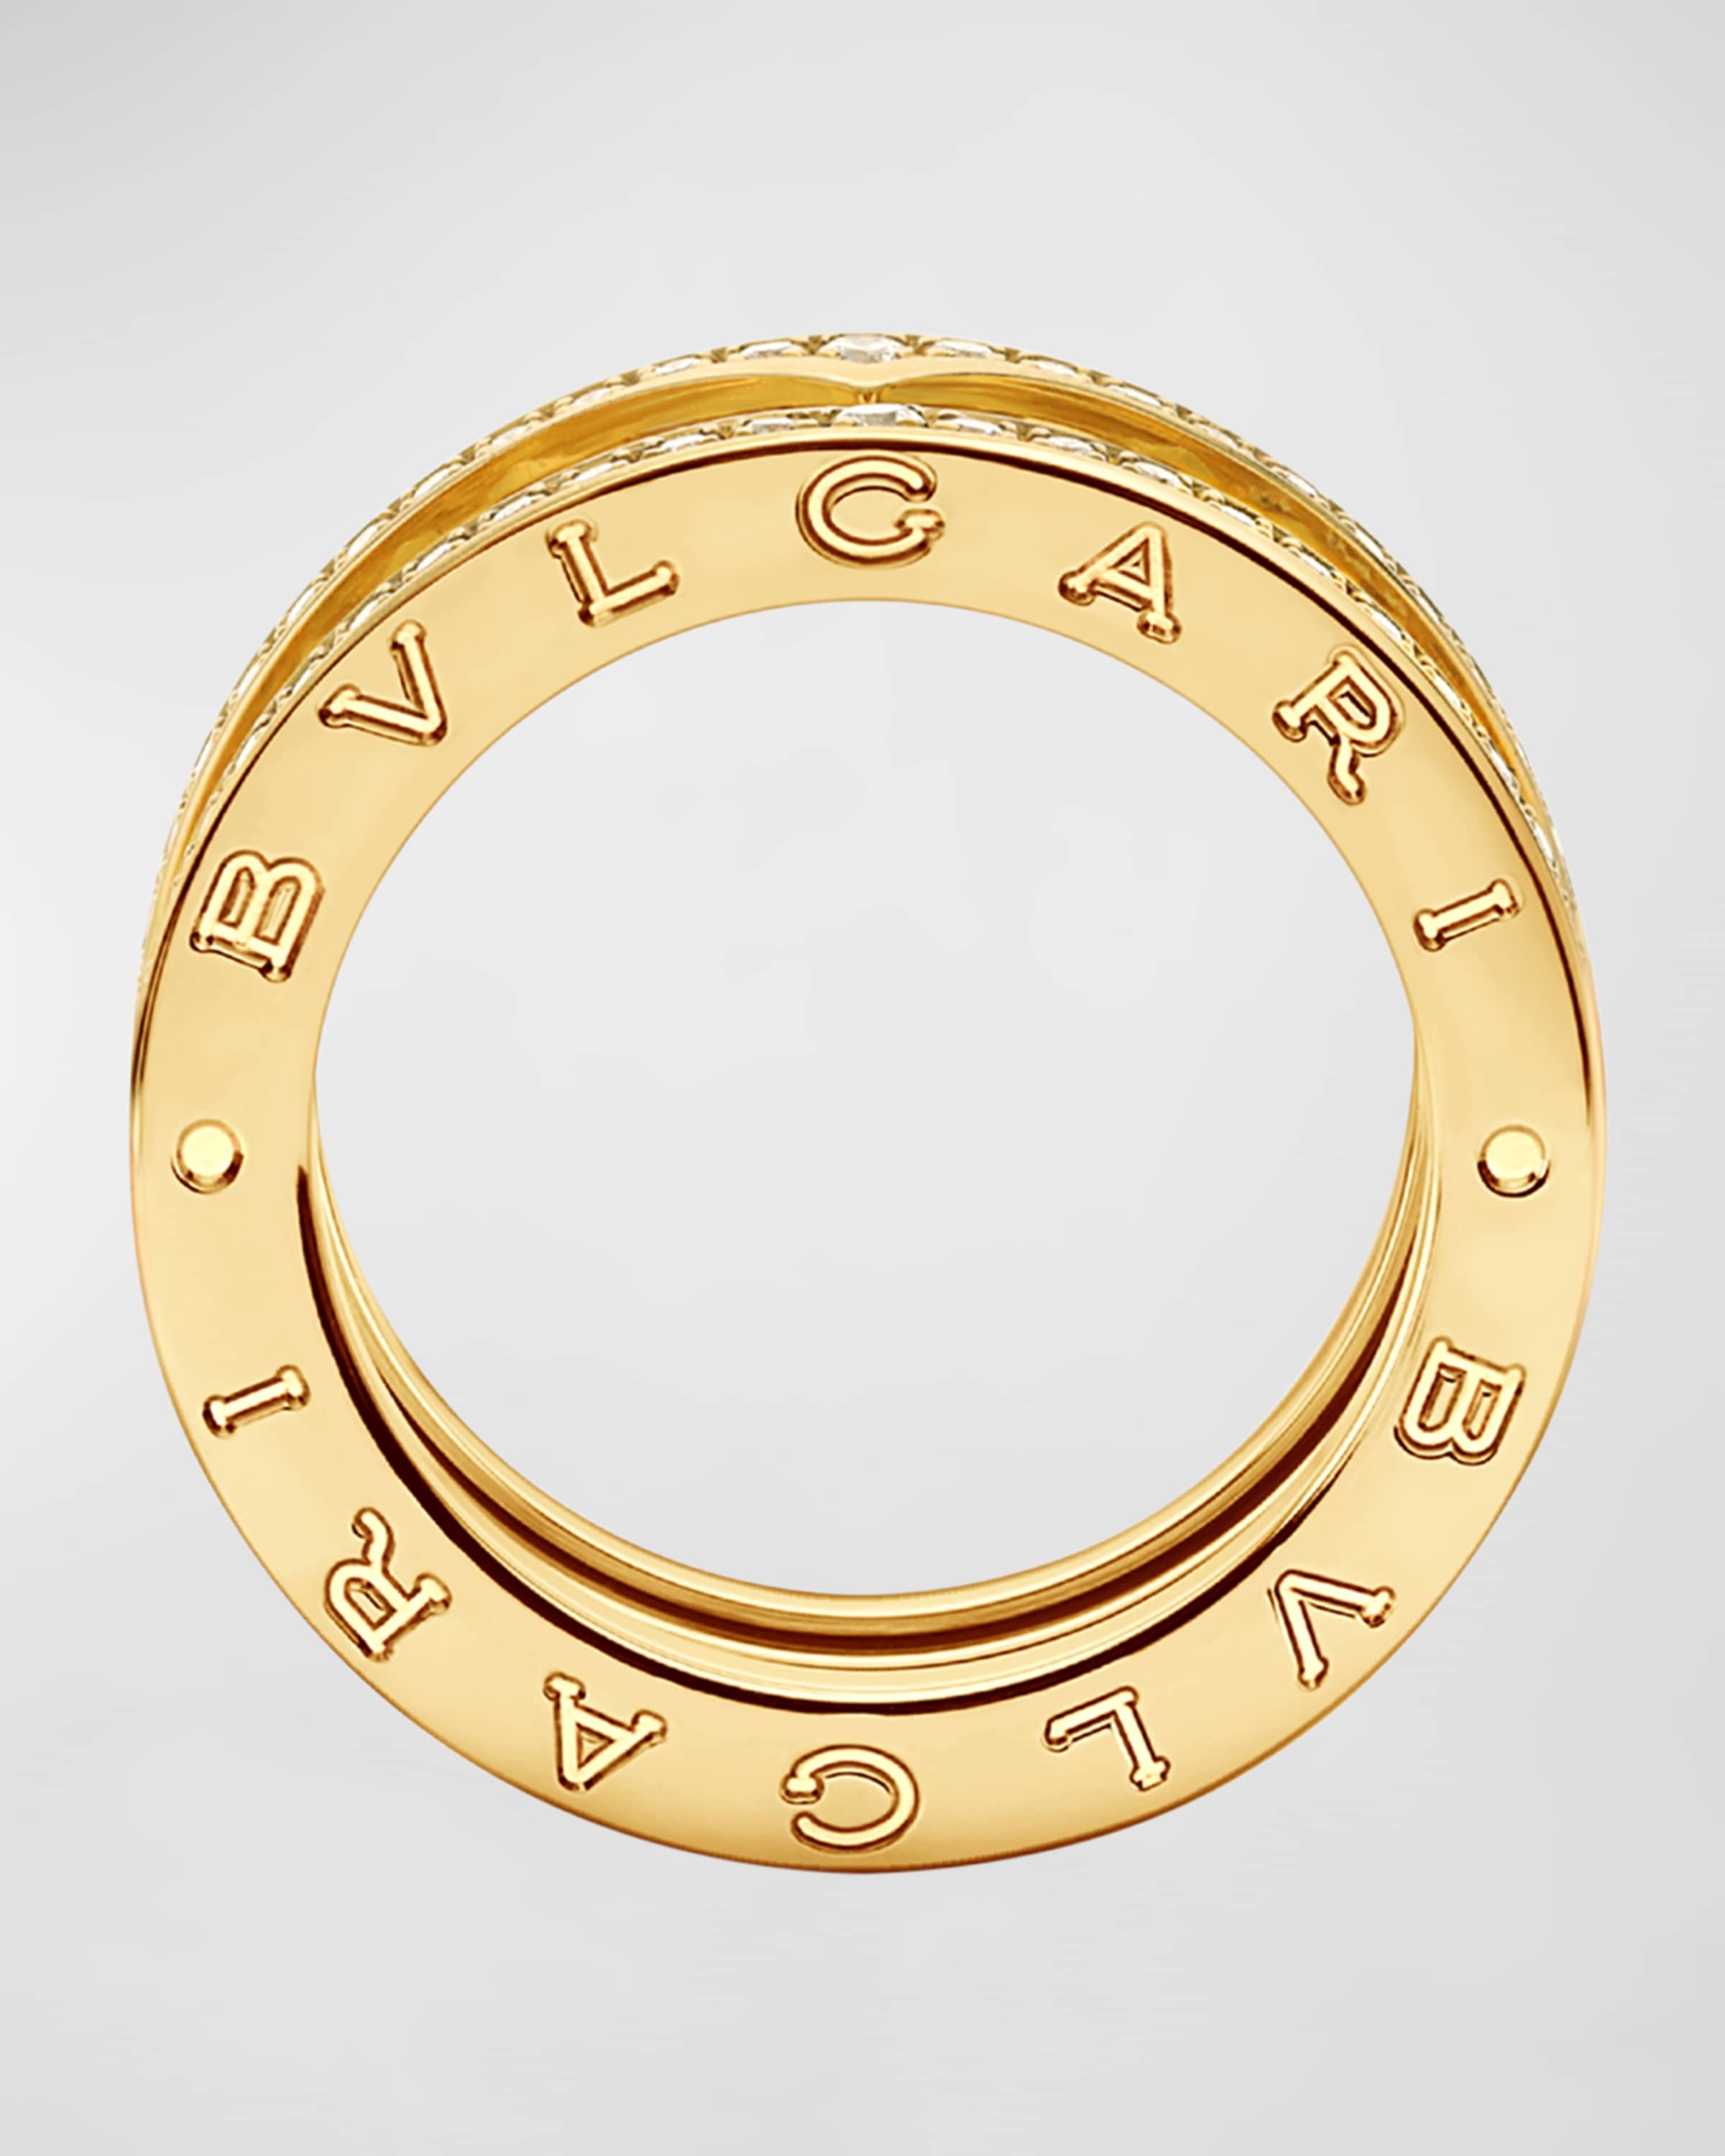 B.Zero1 Yellow Gold Diamond Edge Ring, EU 48 / US 4.5 - 4